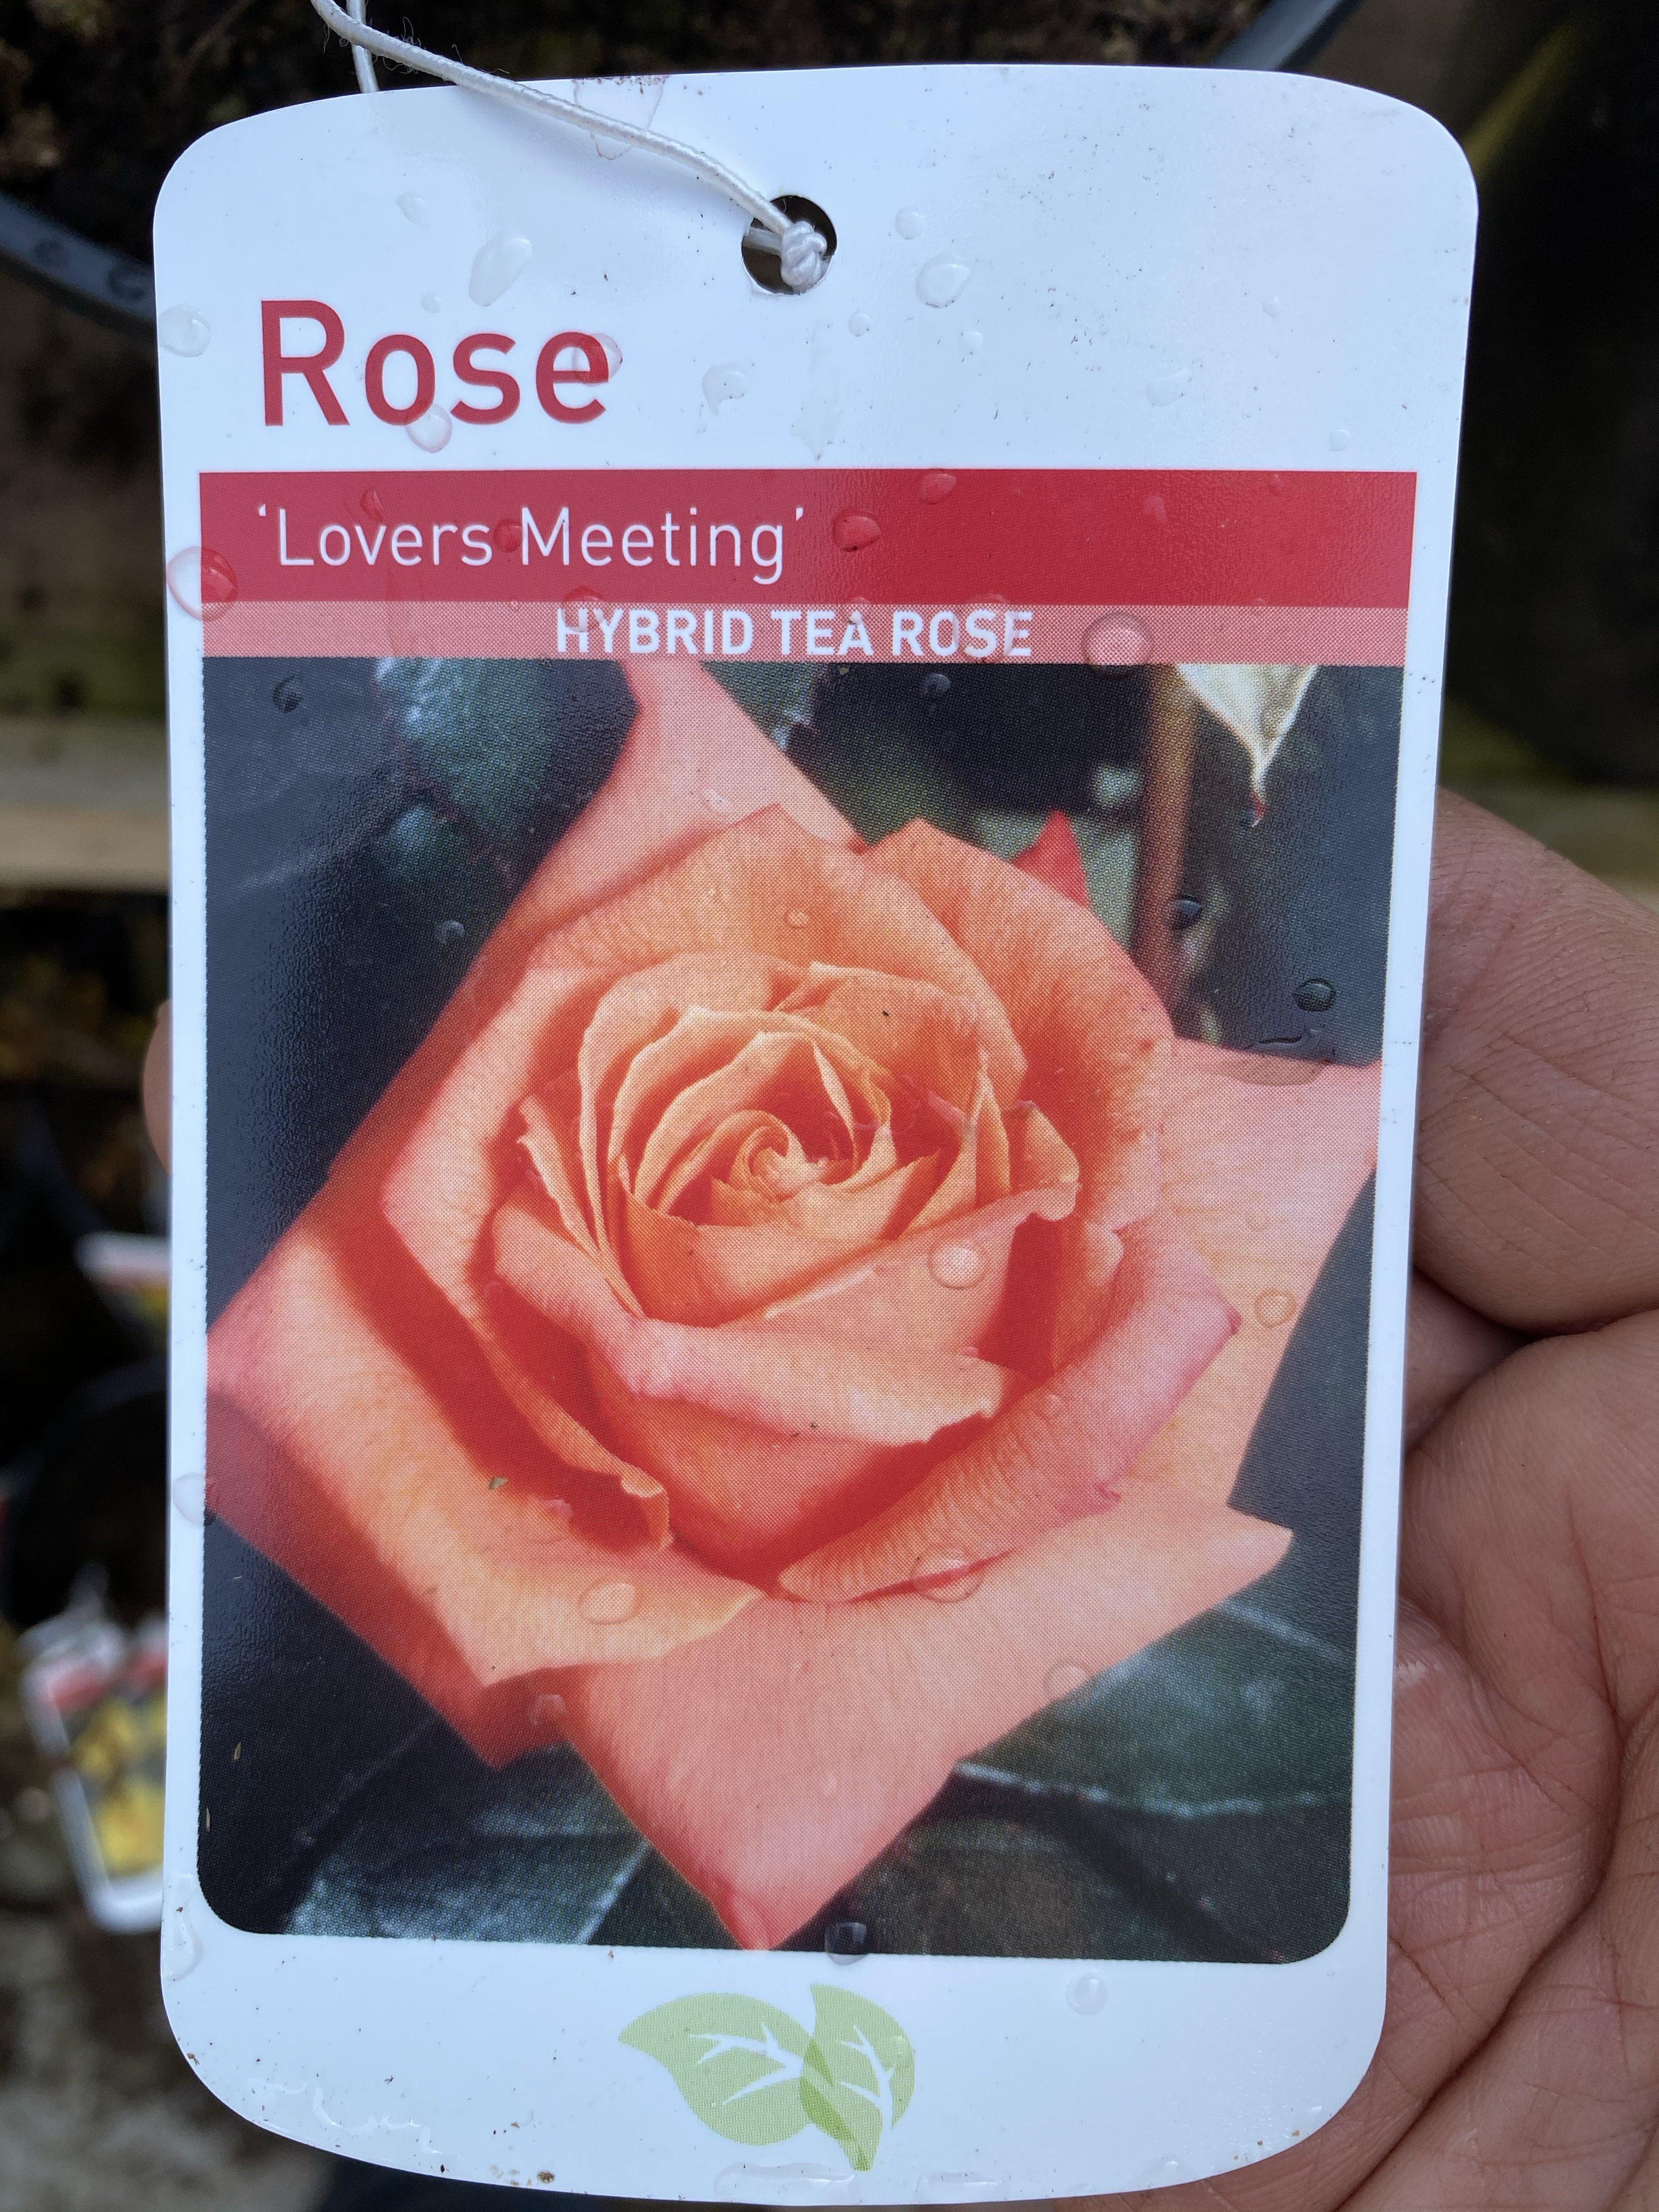 Rose “Lovers Meeting”